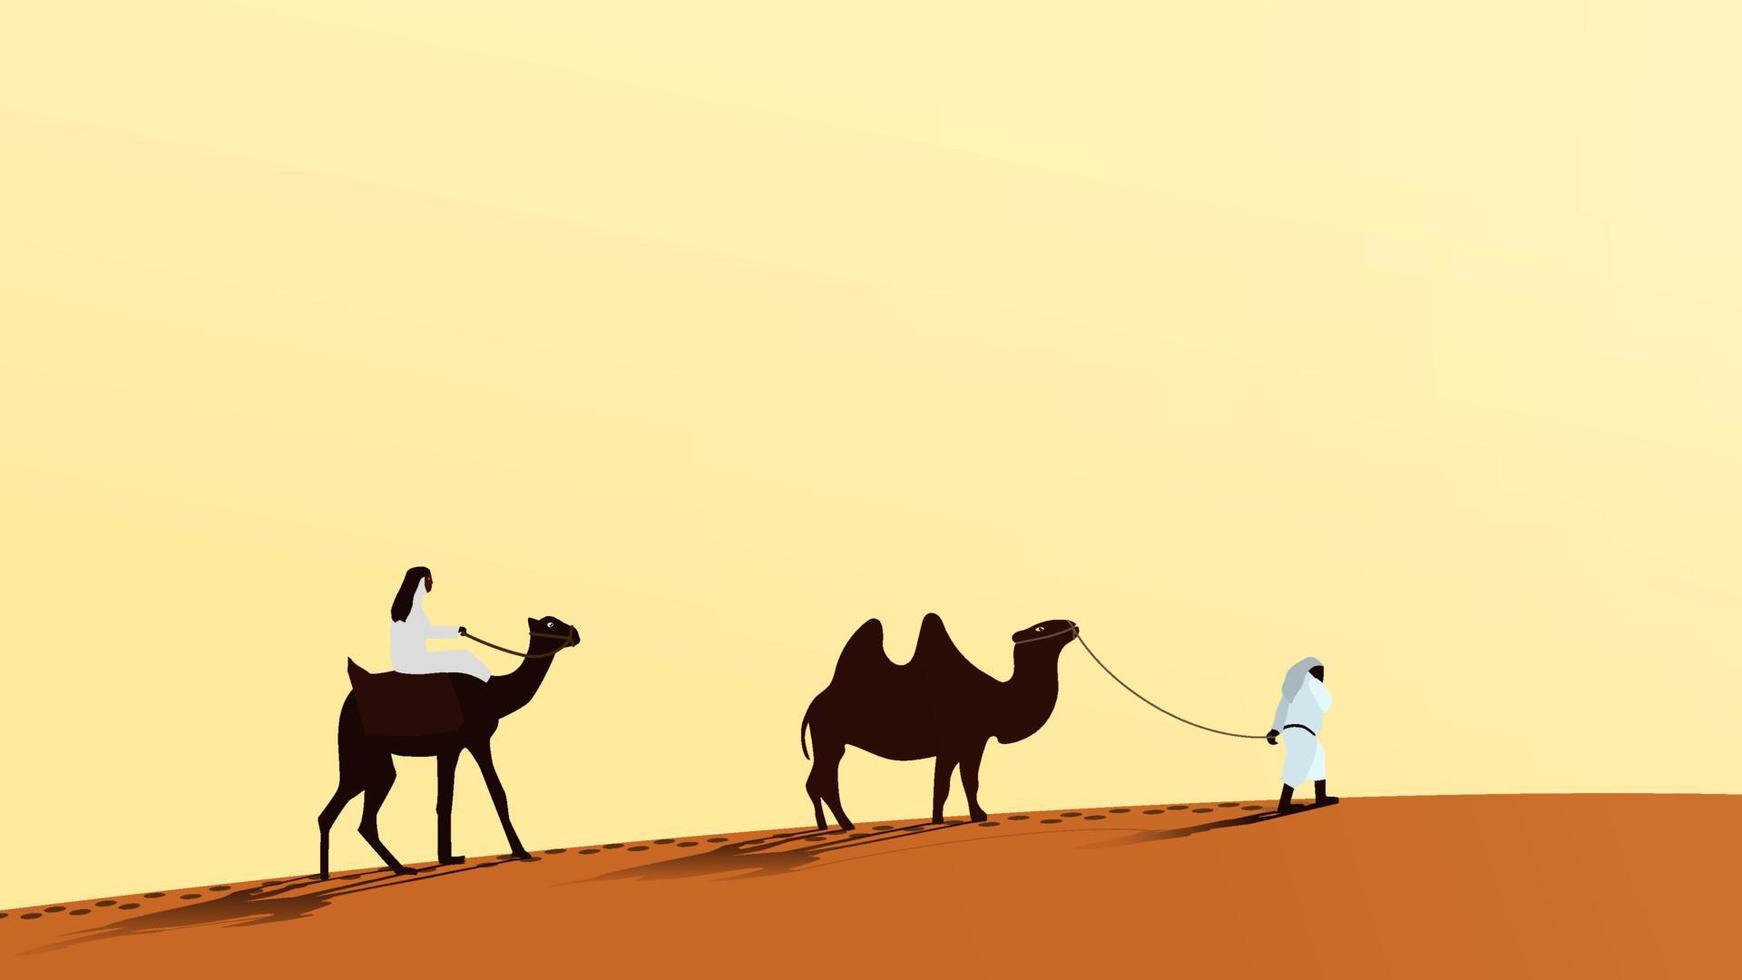 un caravana de camellos con personas caminando a lo largo el Desierto arena. un hombre paseos un camello. el segundo persona Guías el camello terminado el Correa. vector eps10.